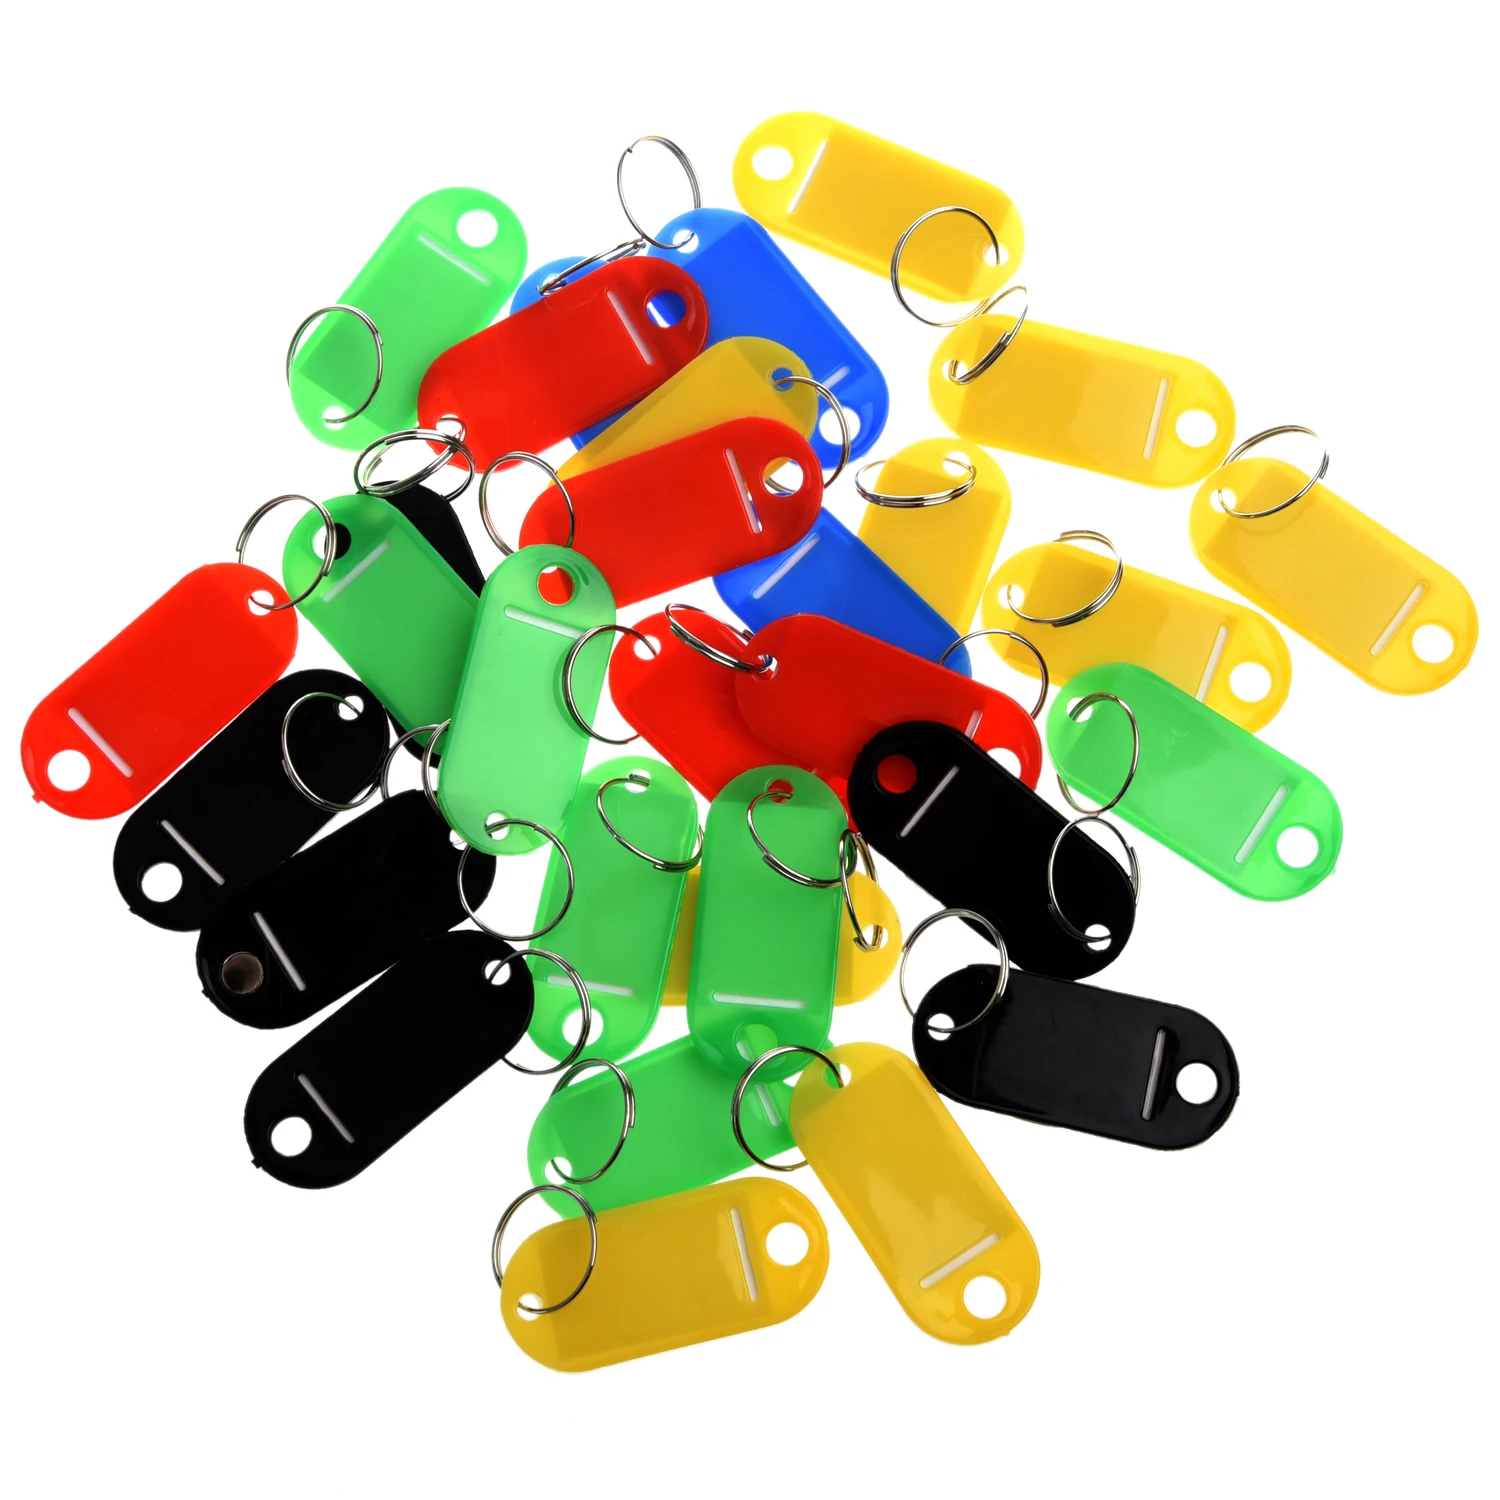 30 X цветные пластиковые брелки для ключей, багажные ID бирки, бирки для ключей с именными картами для многих видов использования-связки ключей, багаж